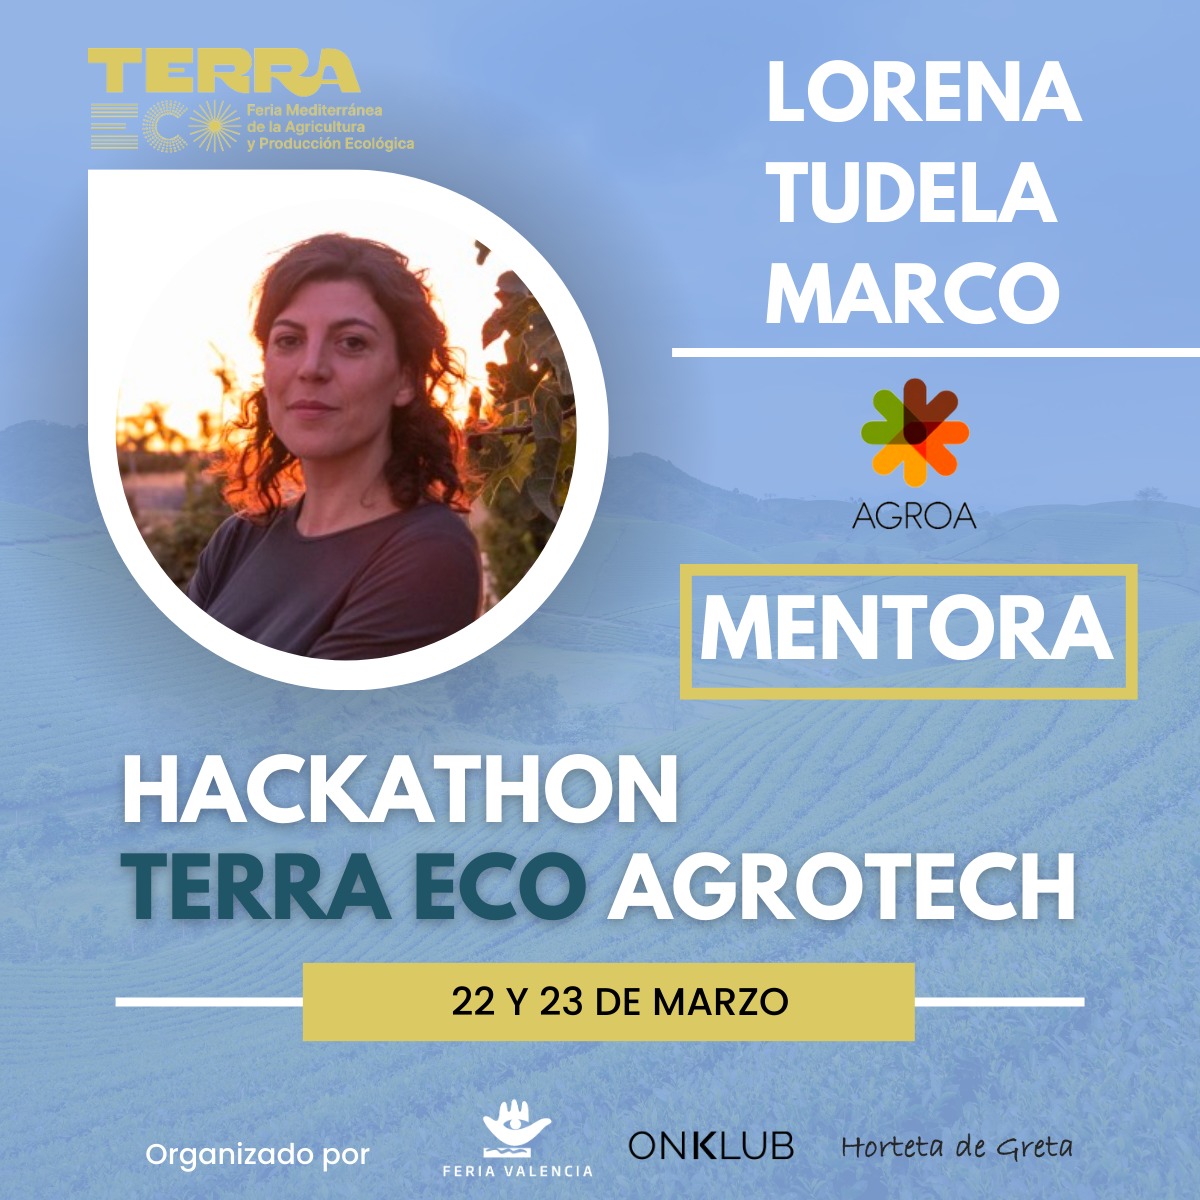 Muy contenta de participar en el 𝗛𝗮𝗰𝗸𝗮𝘁𝗵𝗼𝗻 𝗱𝗲 @Feria_Terraeco como mentora 👤🚀😃

🎯¿𝗘𝗹 𝗼𝗯𝗷𝗲𝘁𝗶𝘃𝗼?
Impulsar al sector #Agrotech 
📍¿𝗗𝗼́𝗻𝗱𝗲?
En @Feria_Valencia con un centenar de empresas y visitantes
🗓️ ¿𝗖𝗨𝗔́𝗡𝗗𝗢?
𝟮𝟮 𝗱𝗲 𝗠𝗮𝗿𝘇𝗼 desde las 9h